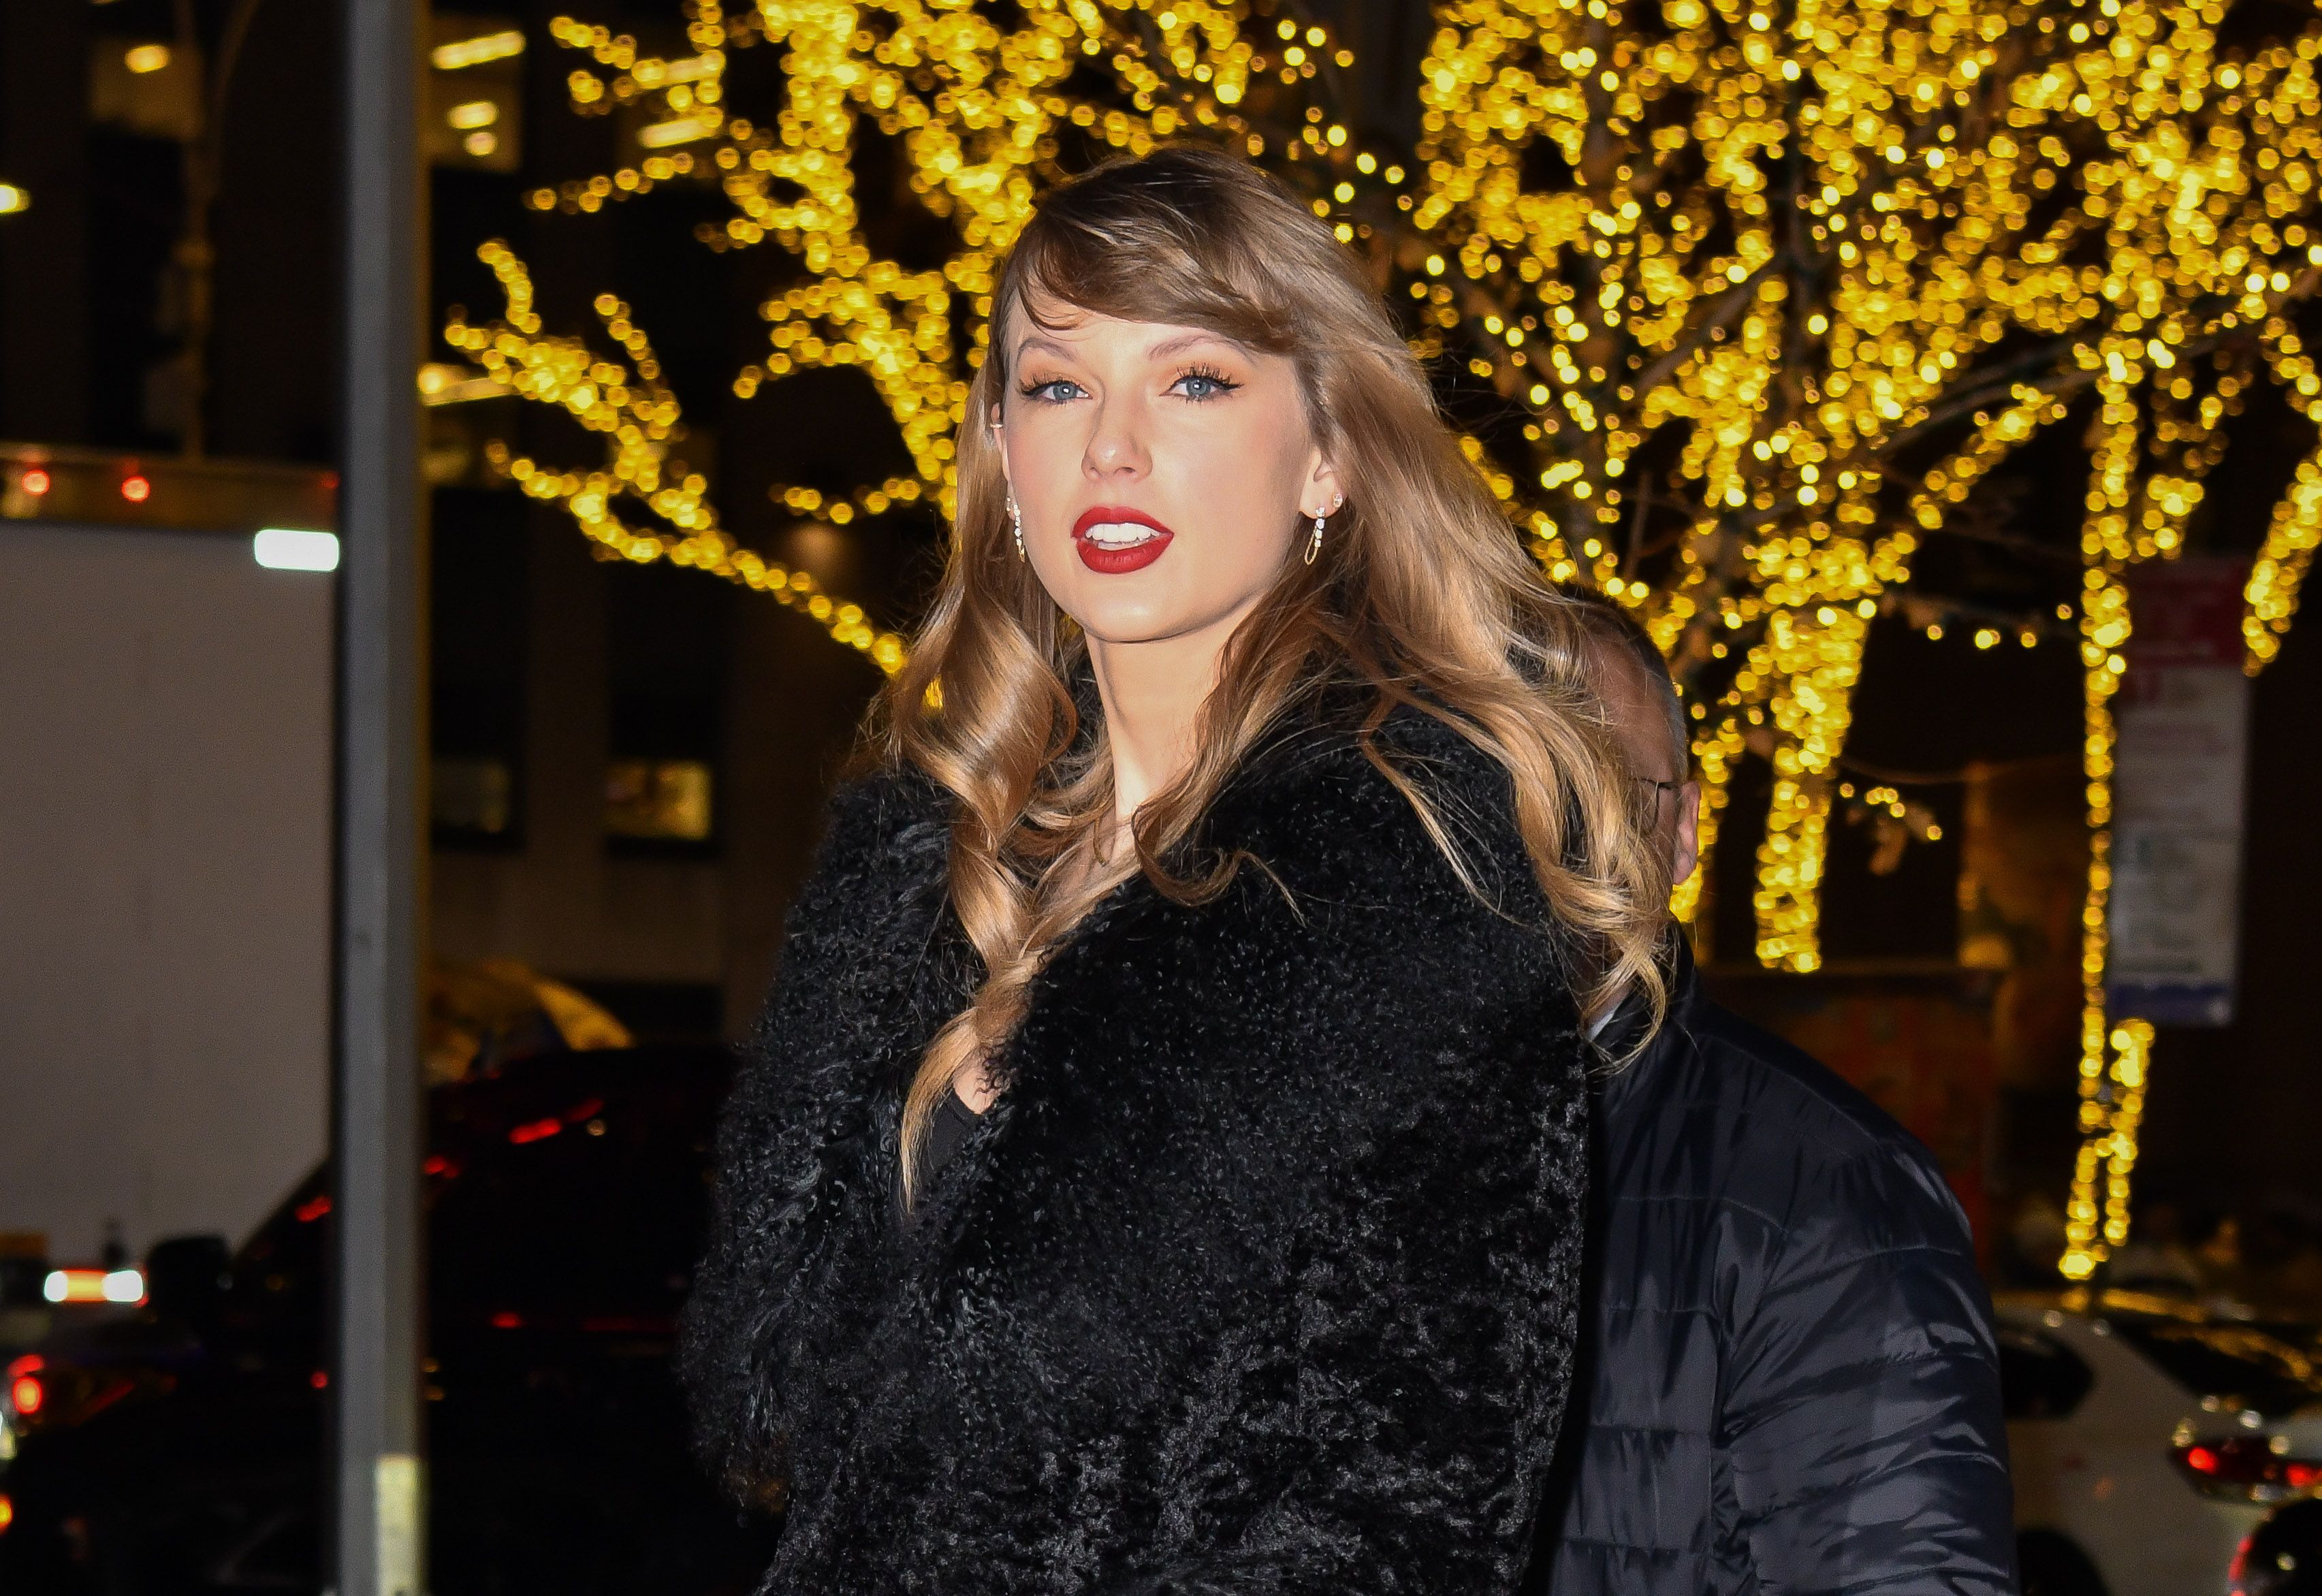 Taylor Swift Rocks Leggings, 'Take Me To Paris' Sweatshirt